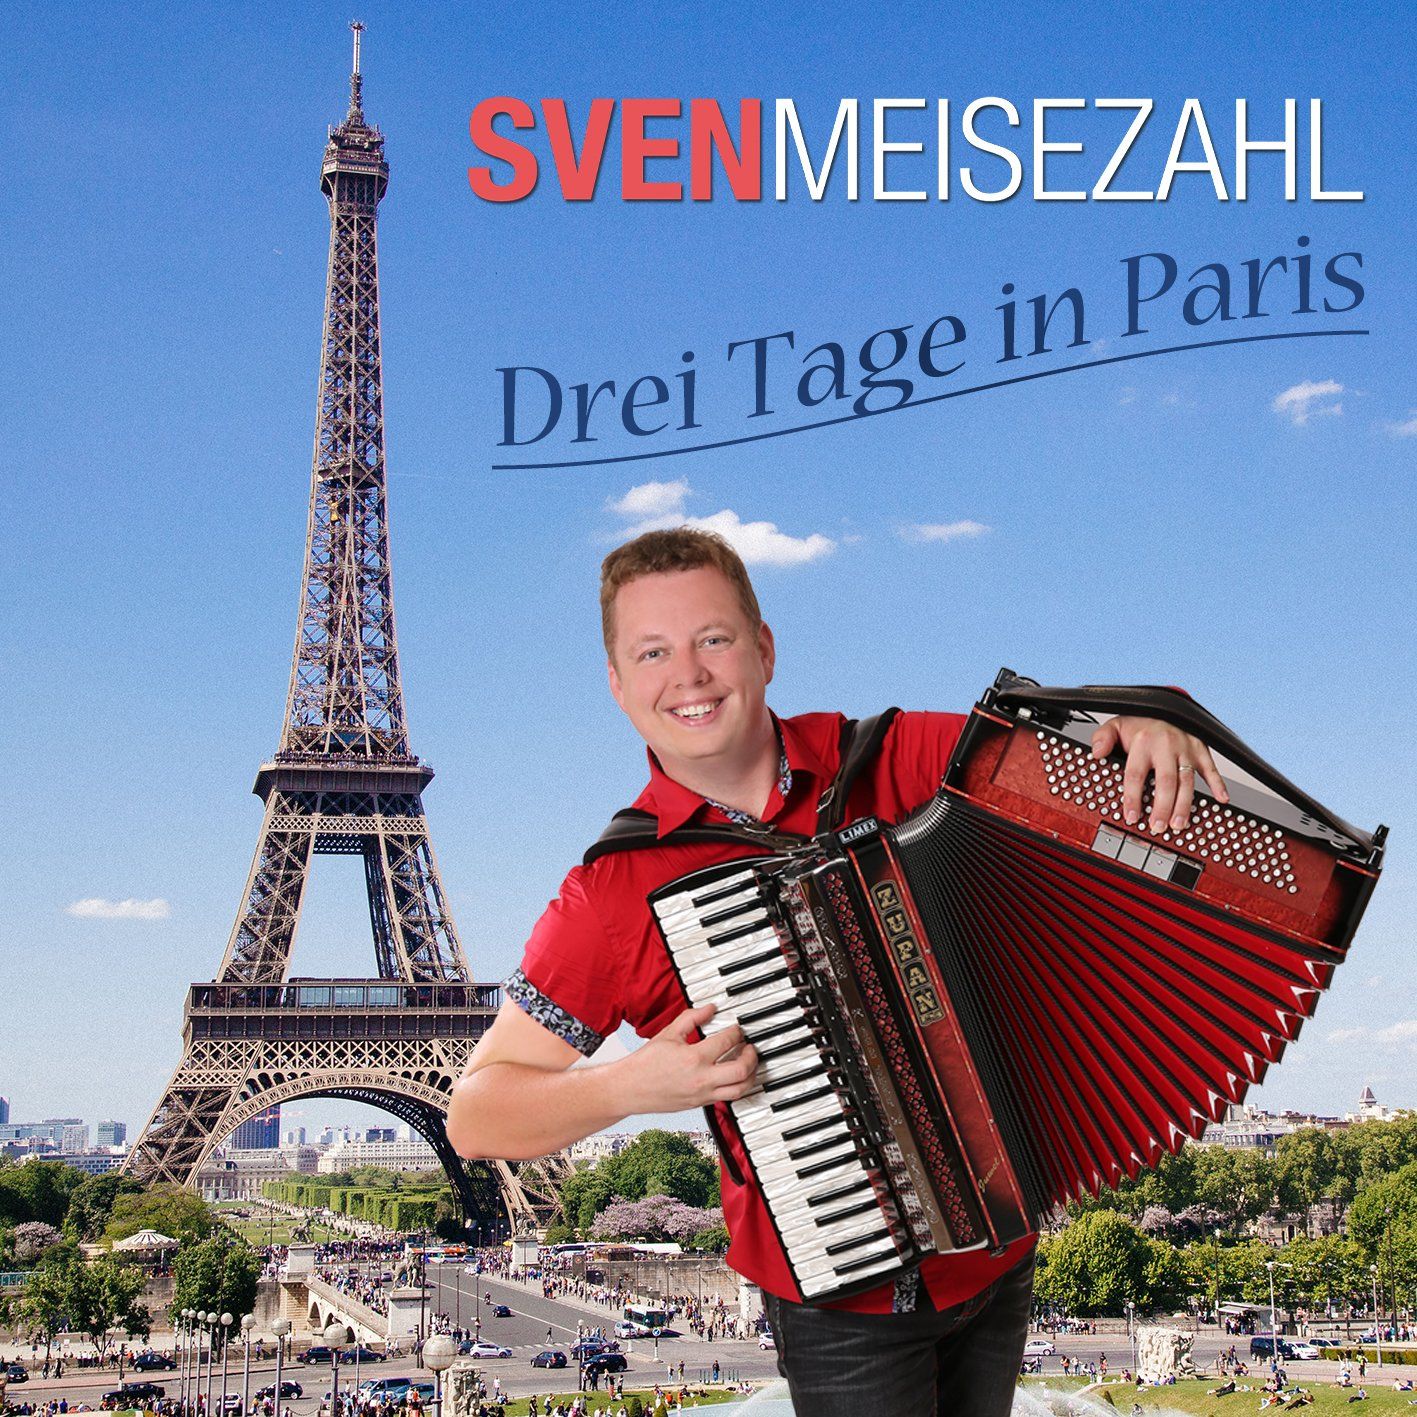 Sven Meisezahl - Drei Tage in Paries